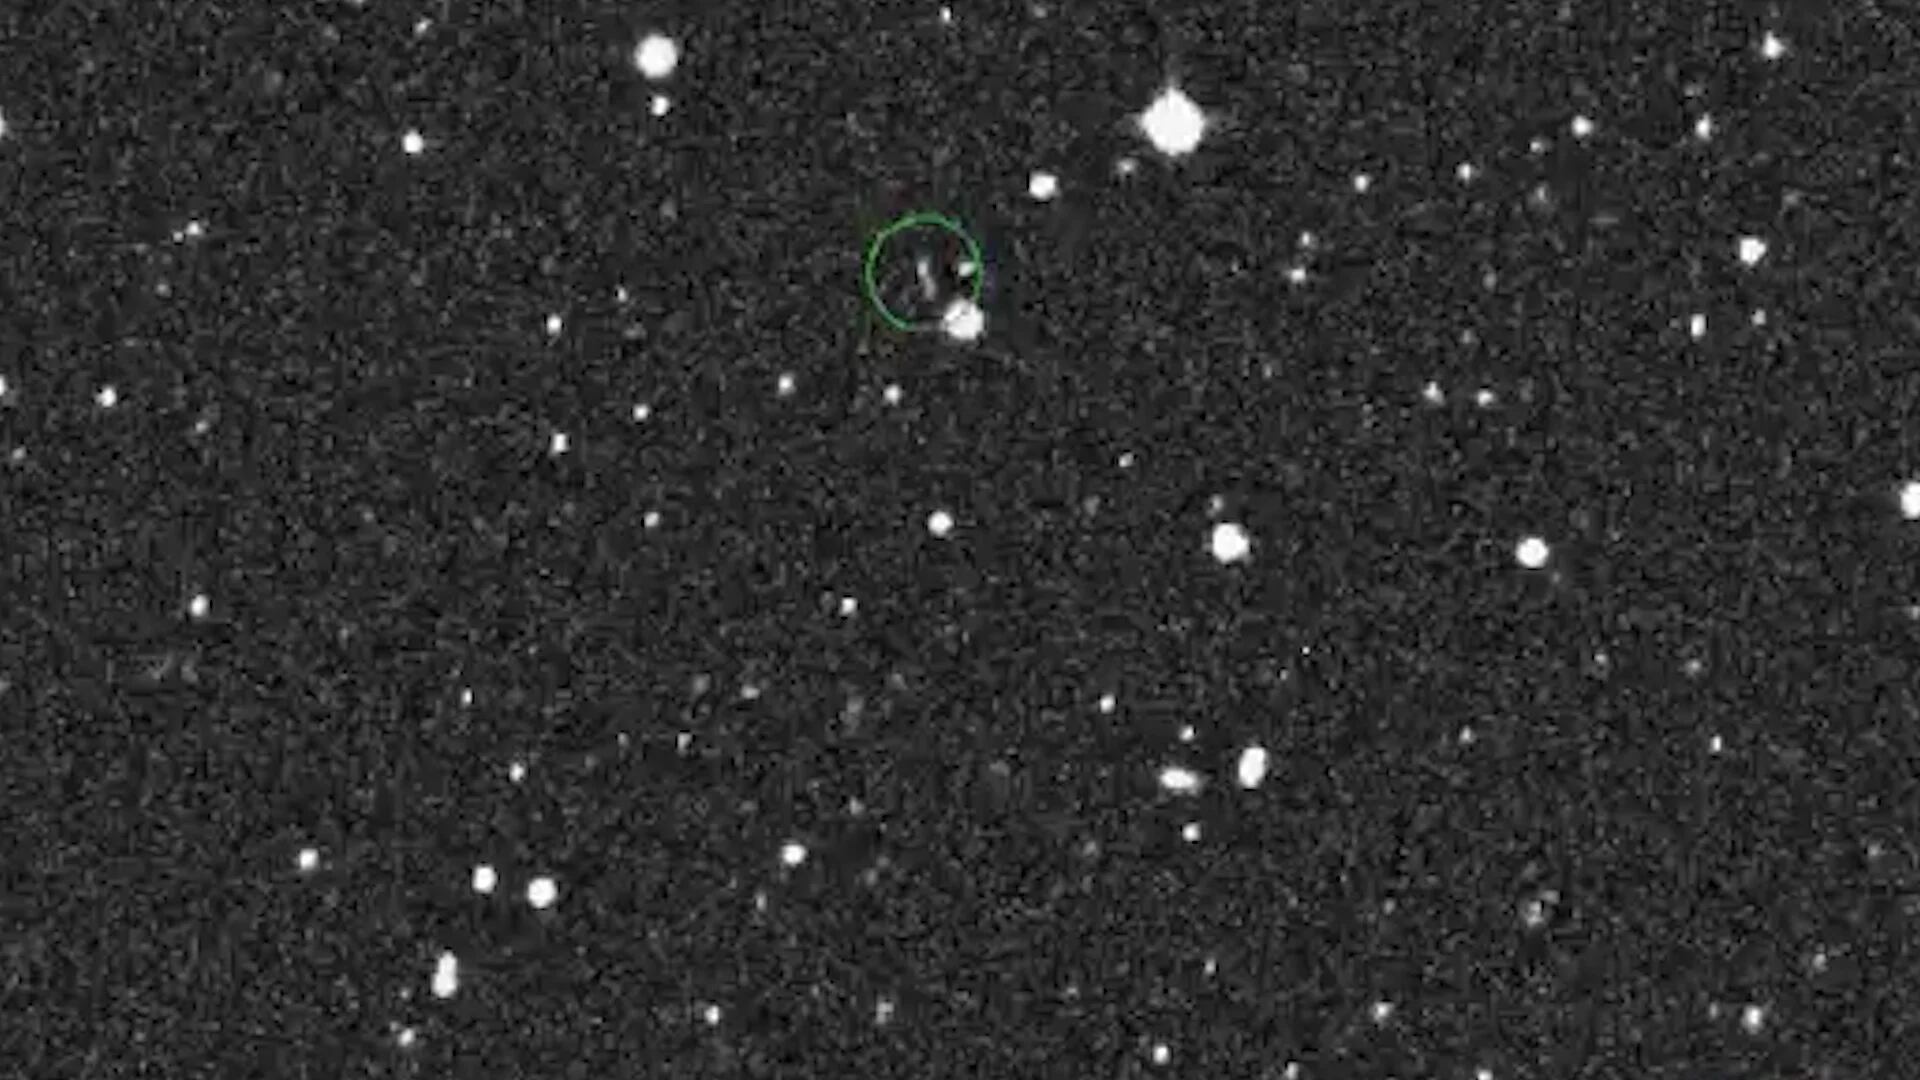 El pequeño asteroide, denominado 2020 CD3, fue descubierto por astrónomos en Tucson, Arizona, el 15 de febrero